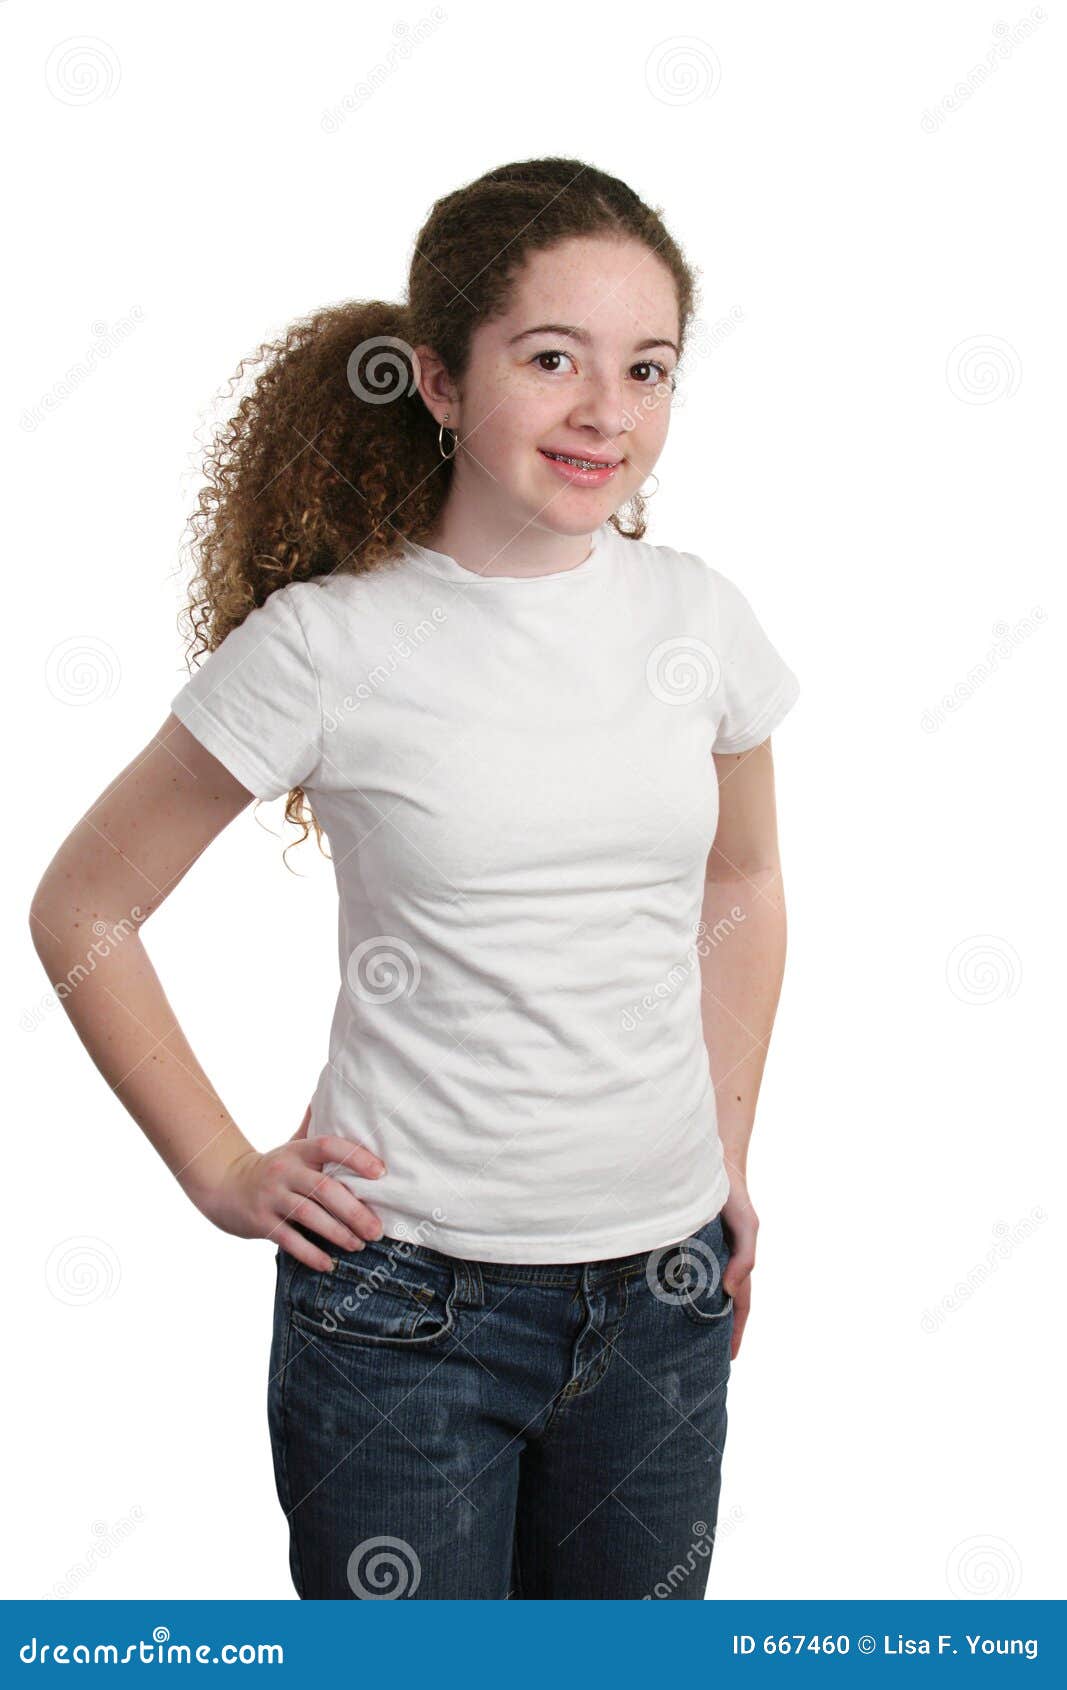 girl in white shirt